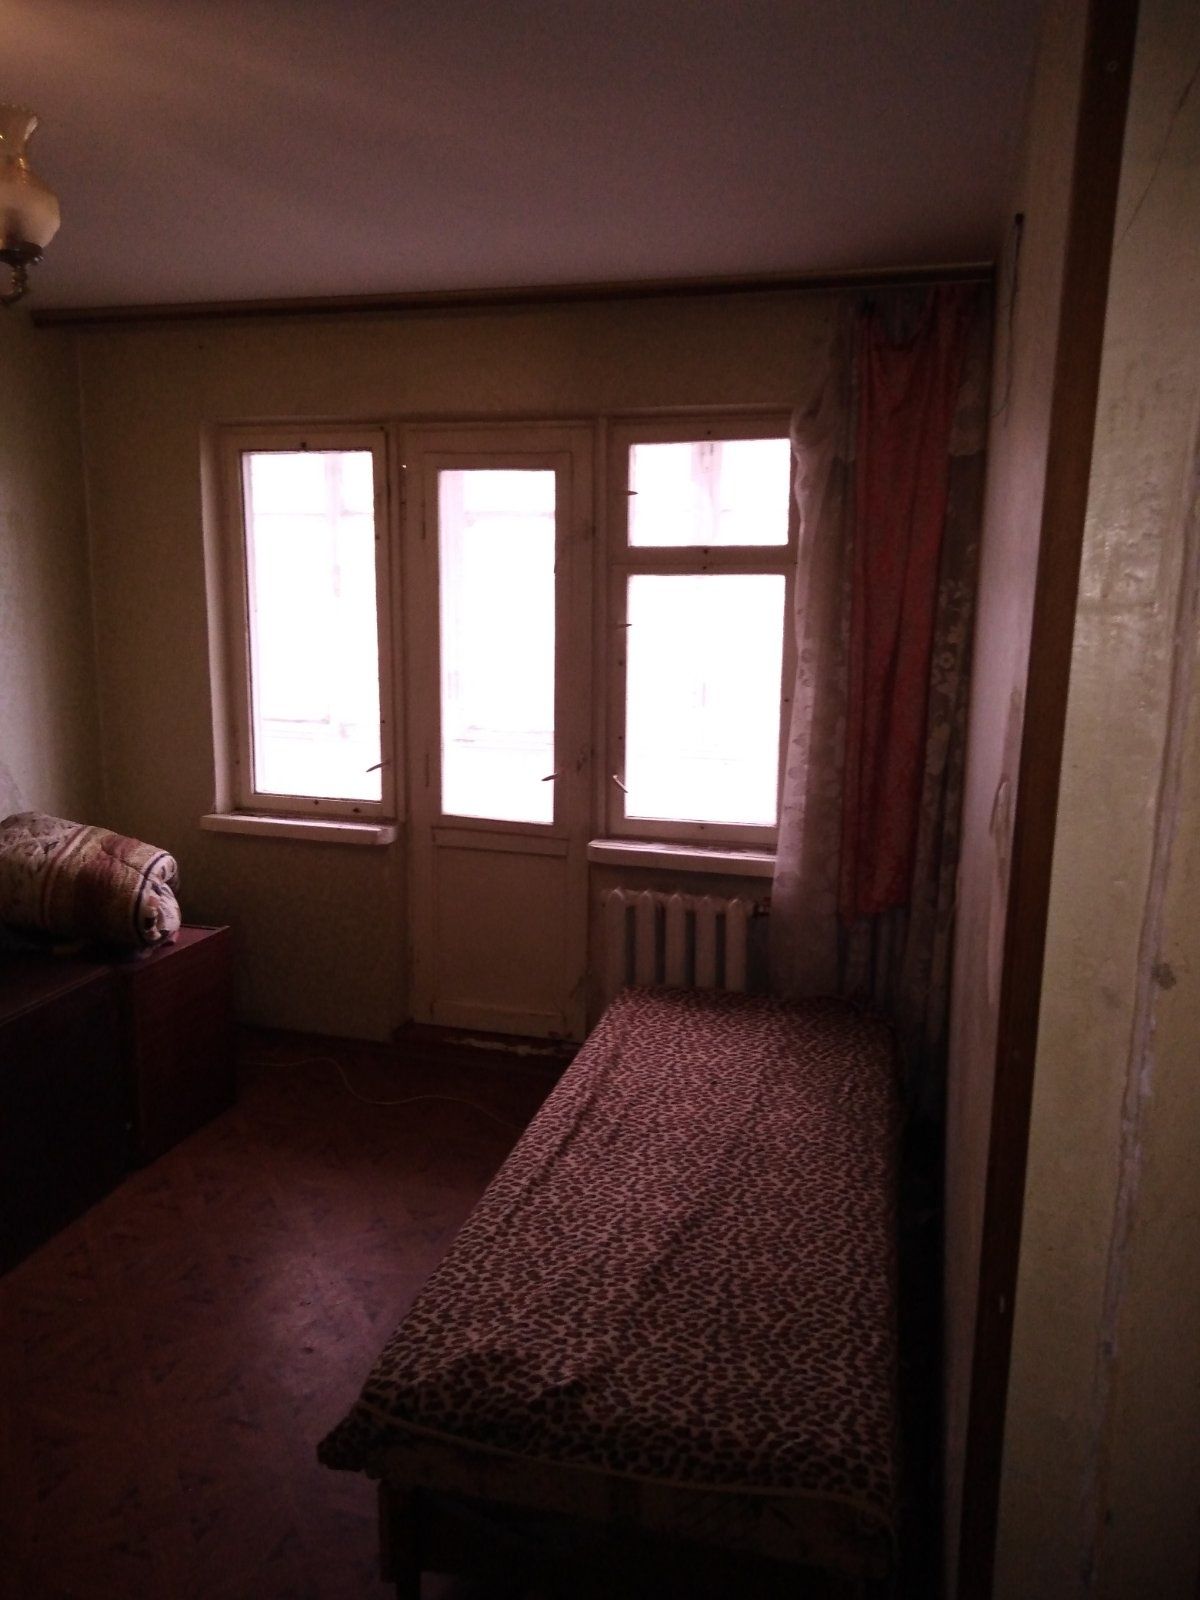 Продам квартиру 2 комнатную на Краснова Вымпел